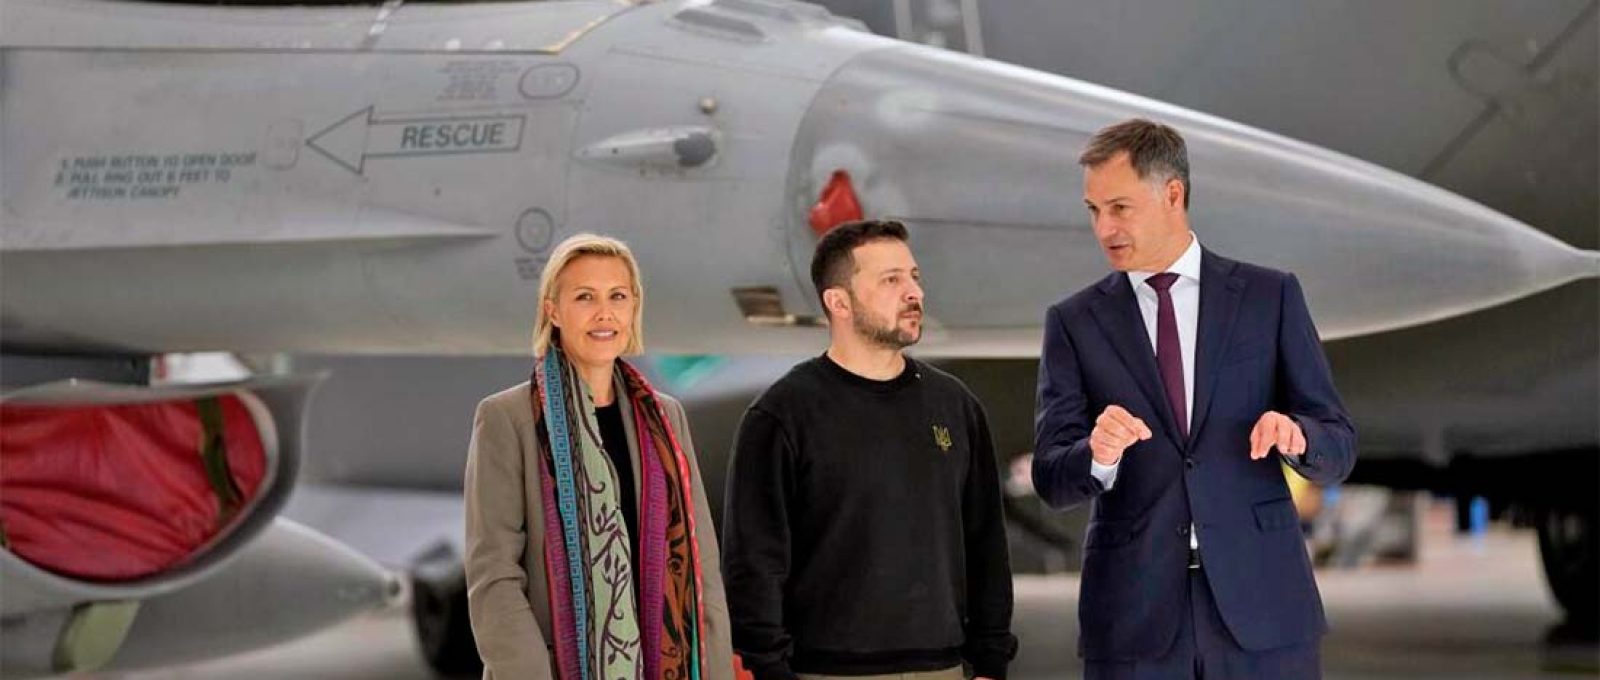 O primeiro-ministro da Bélgica, Alexander De Croo (dir.), e a ministra da Defesa da Bélgica, Ludivine Dedonder (esq.), posam com o presidente da Ucrânia, Volodymyr Zelensky, em frente a um F-16 no aeroporto militar de Melsbroek, em Bruxelas, 28 de maio (Virginia Mayo/Associated Press).